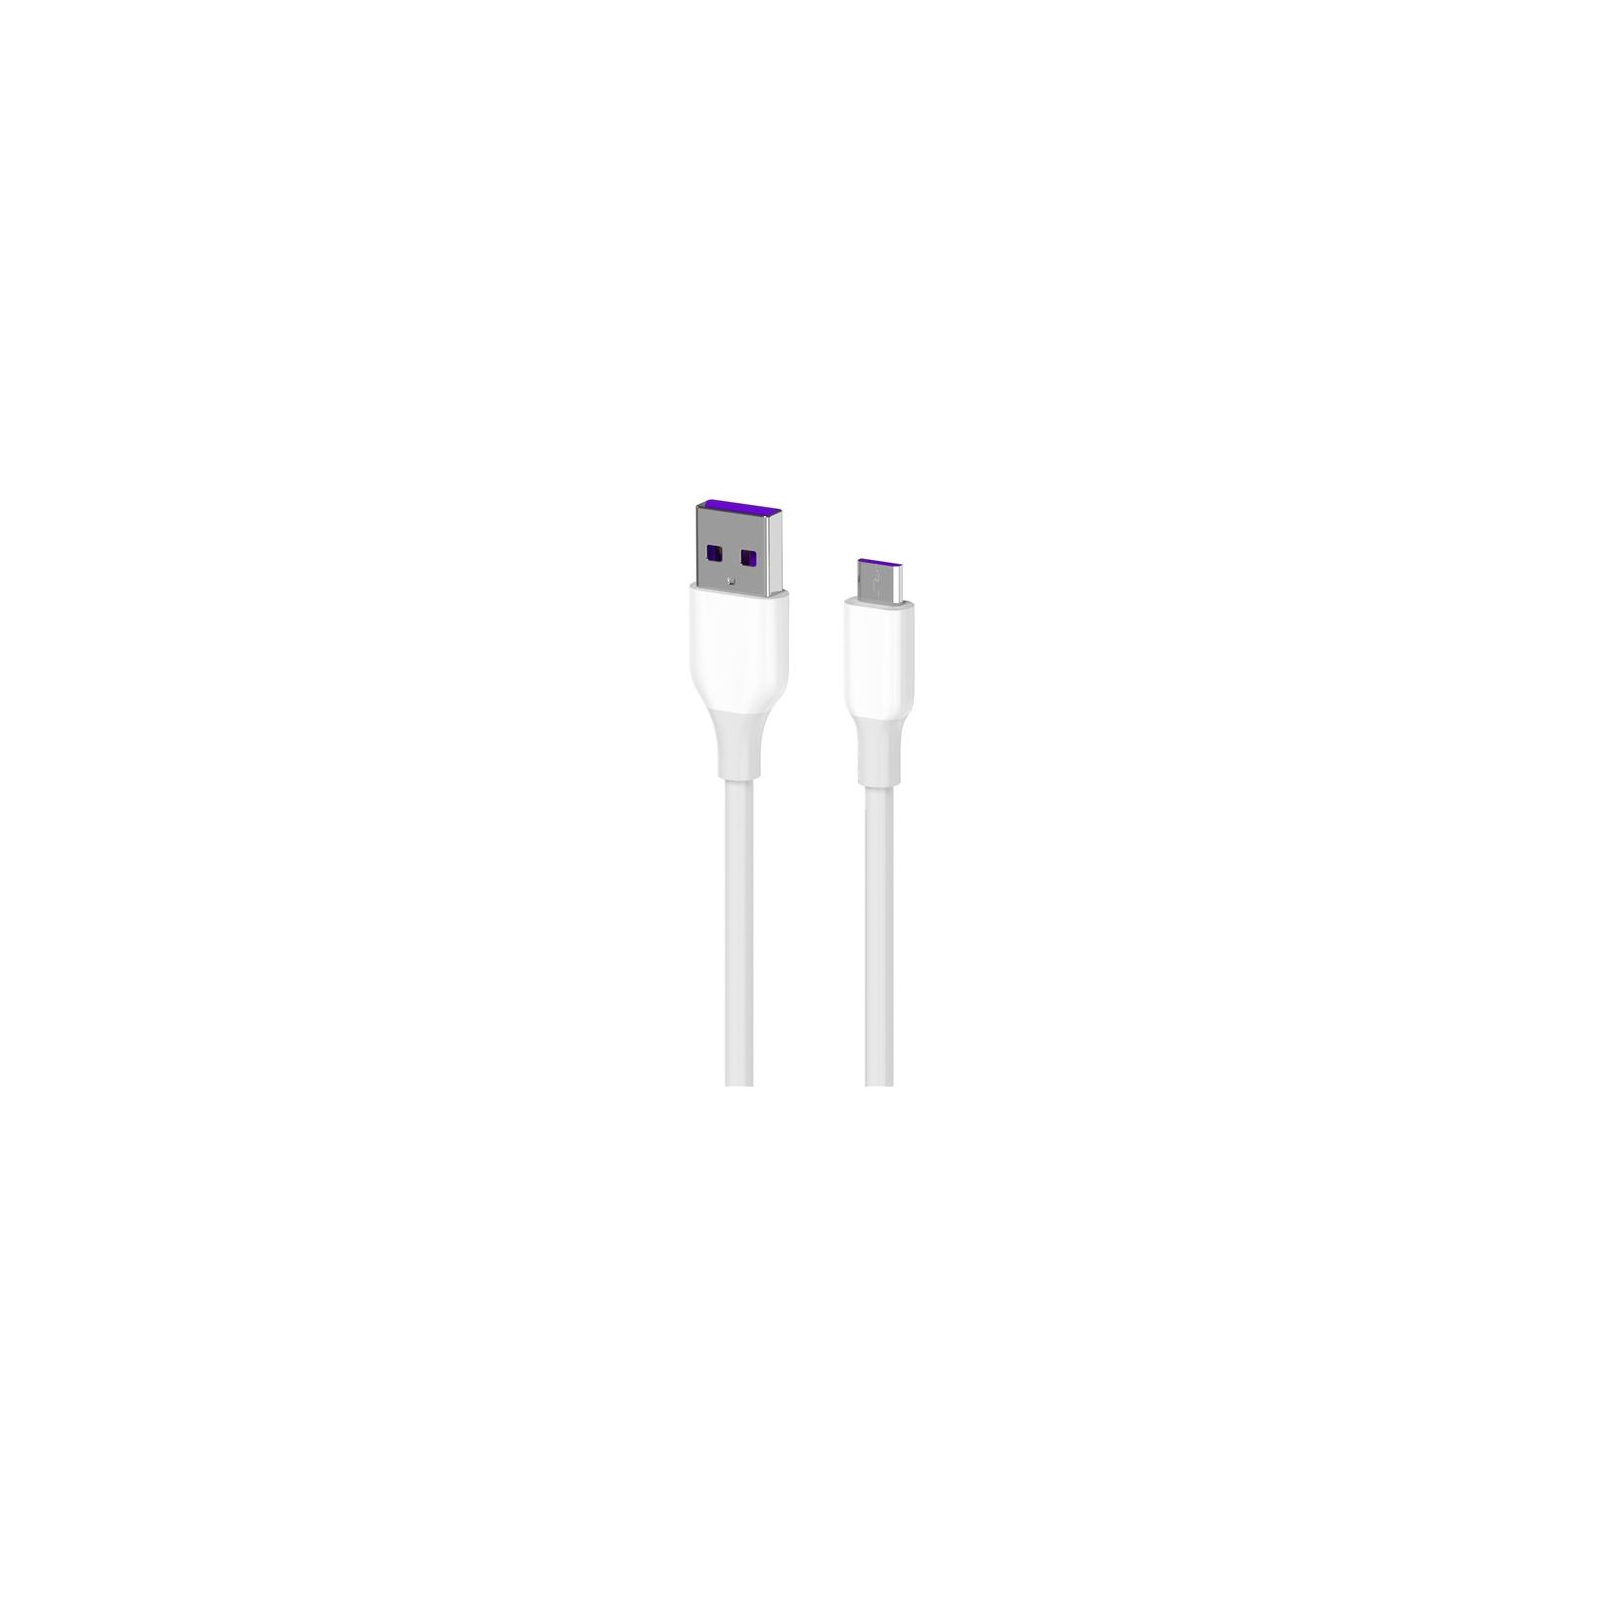 Дата кабель USB 2.0 AM to Micro 5P 1.0m Glow white 2E (2E-CCAM-WH)